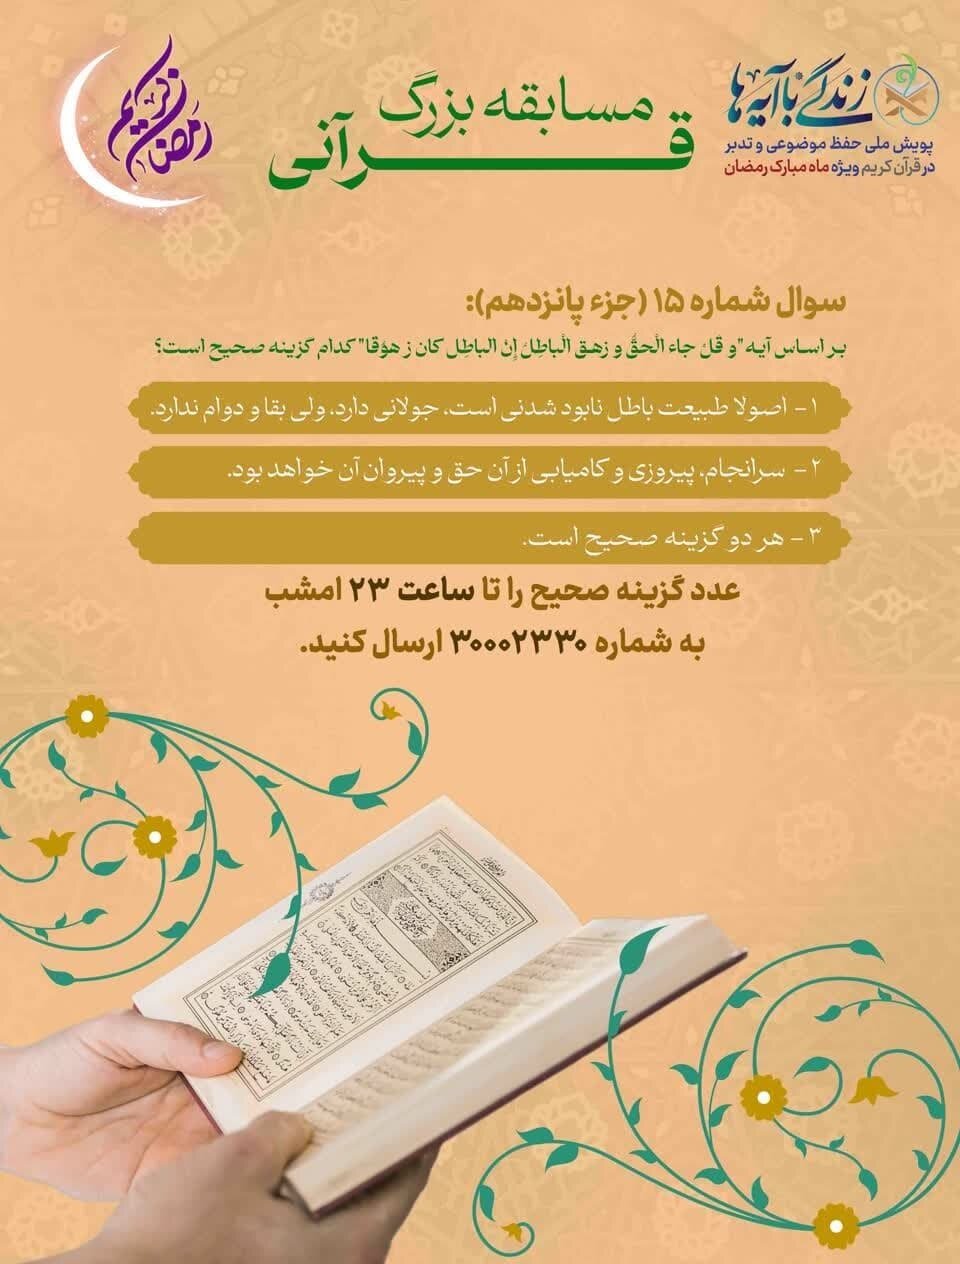 سوال روز پانزدهم طرح «زندگی با آیه‌ها» در استان فارس اعلام شد